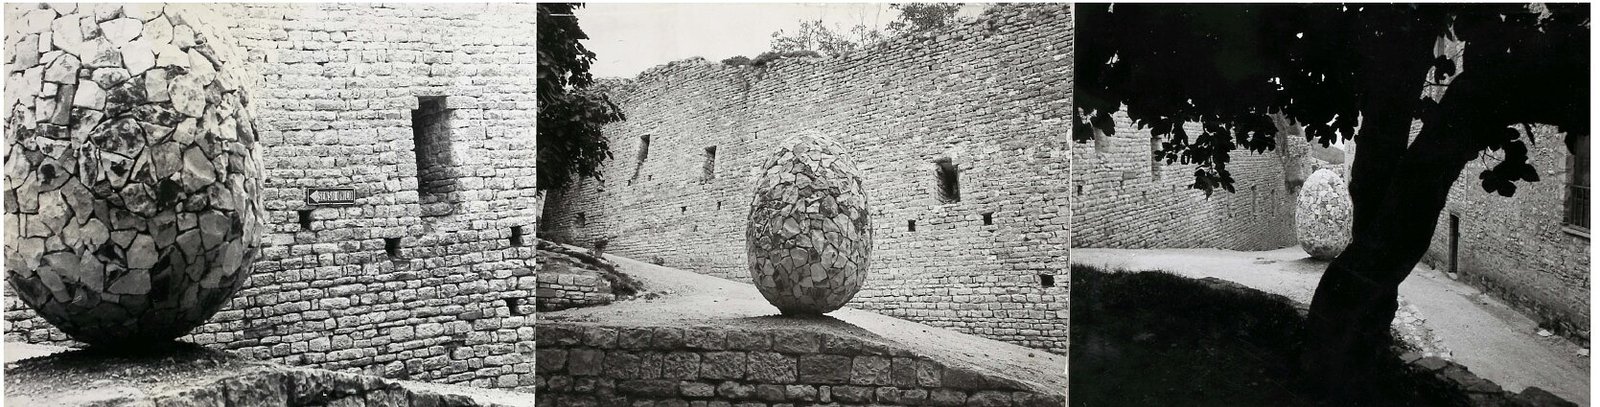 <em>The Egg of Gubbio</em>, 1976